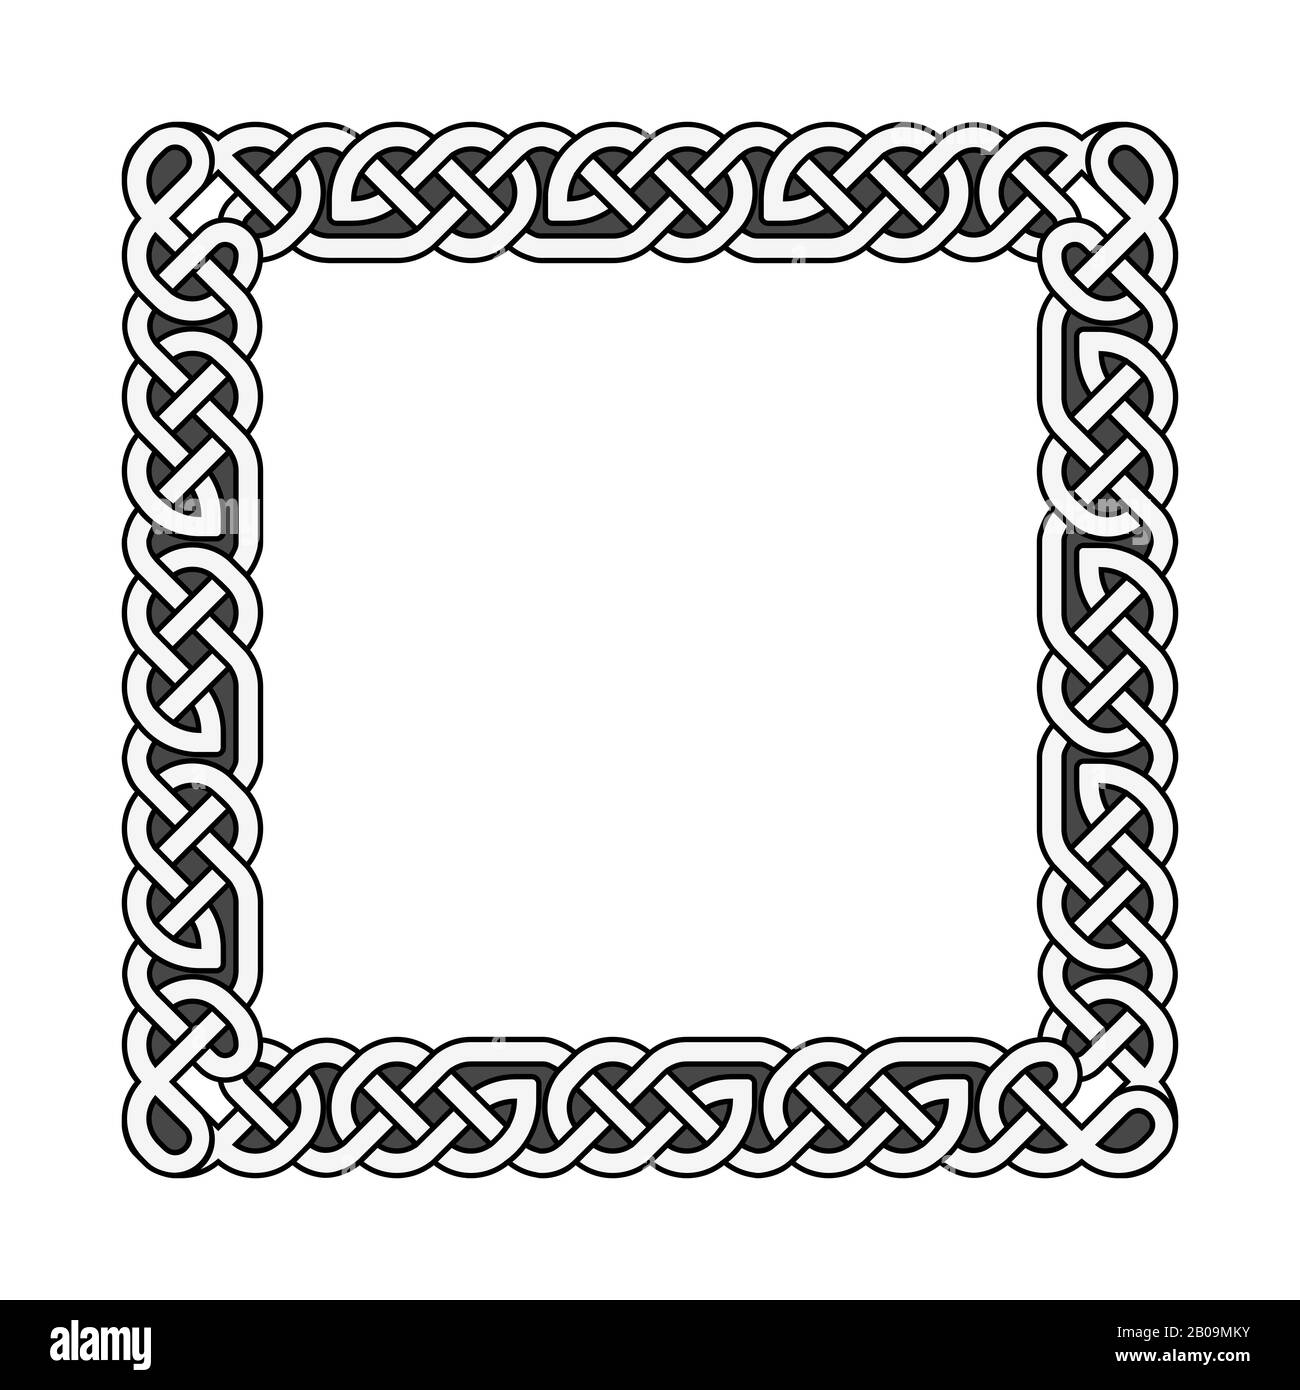 Cadre médiéval vectoriel à noeuds celtiques carrés en noir et blanc. Illustration traditionnelle du motif du cadre Illustration de Vecteur